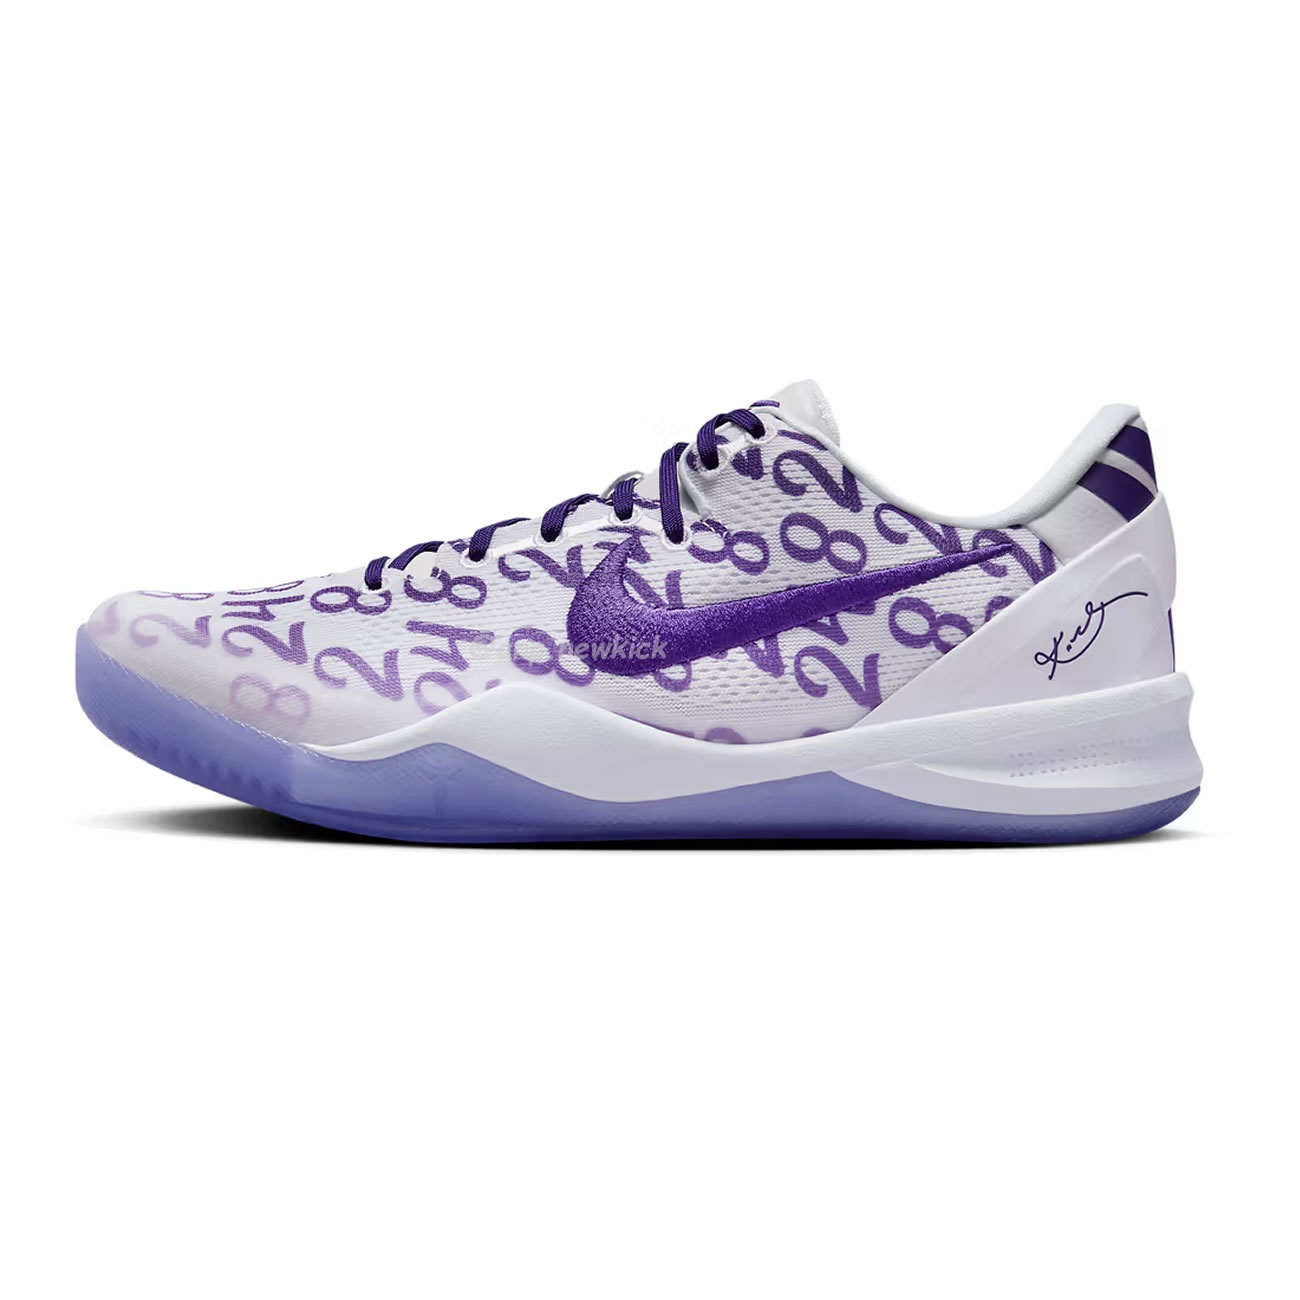 Nike Kobe 8 Protro Court Purple Fq3549 100 (1) - newkick.org